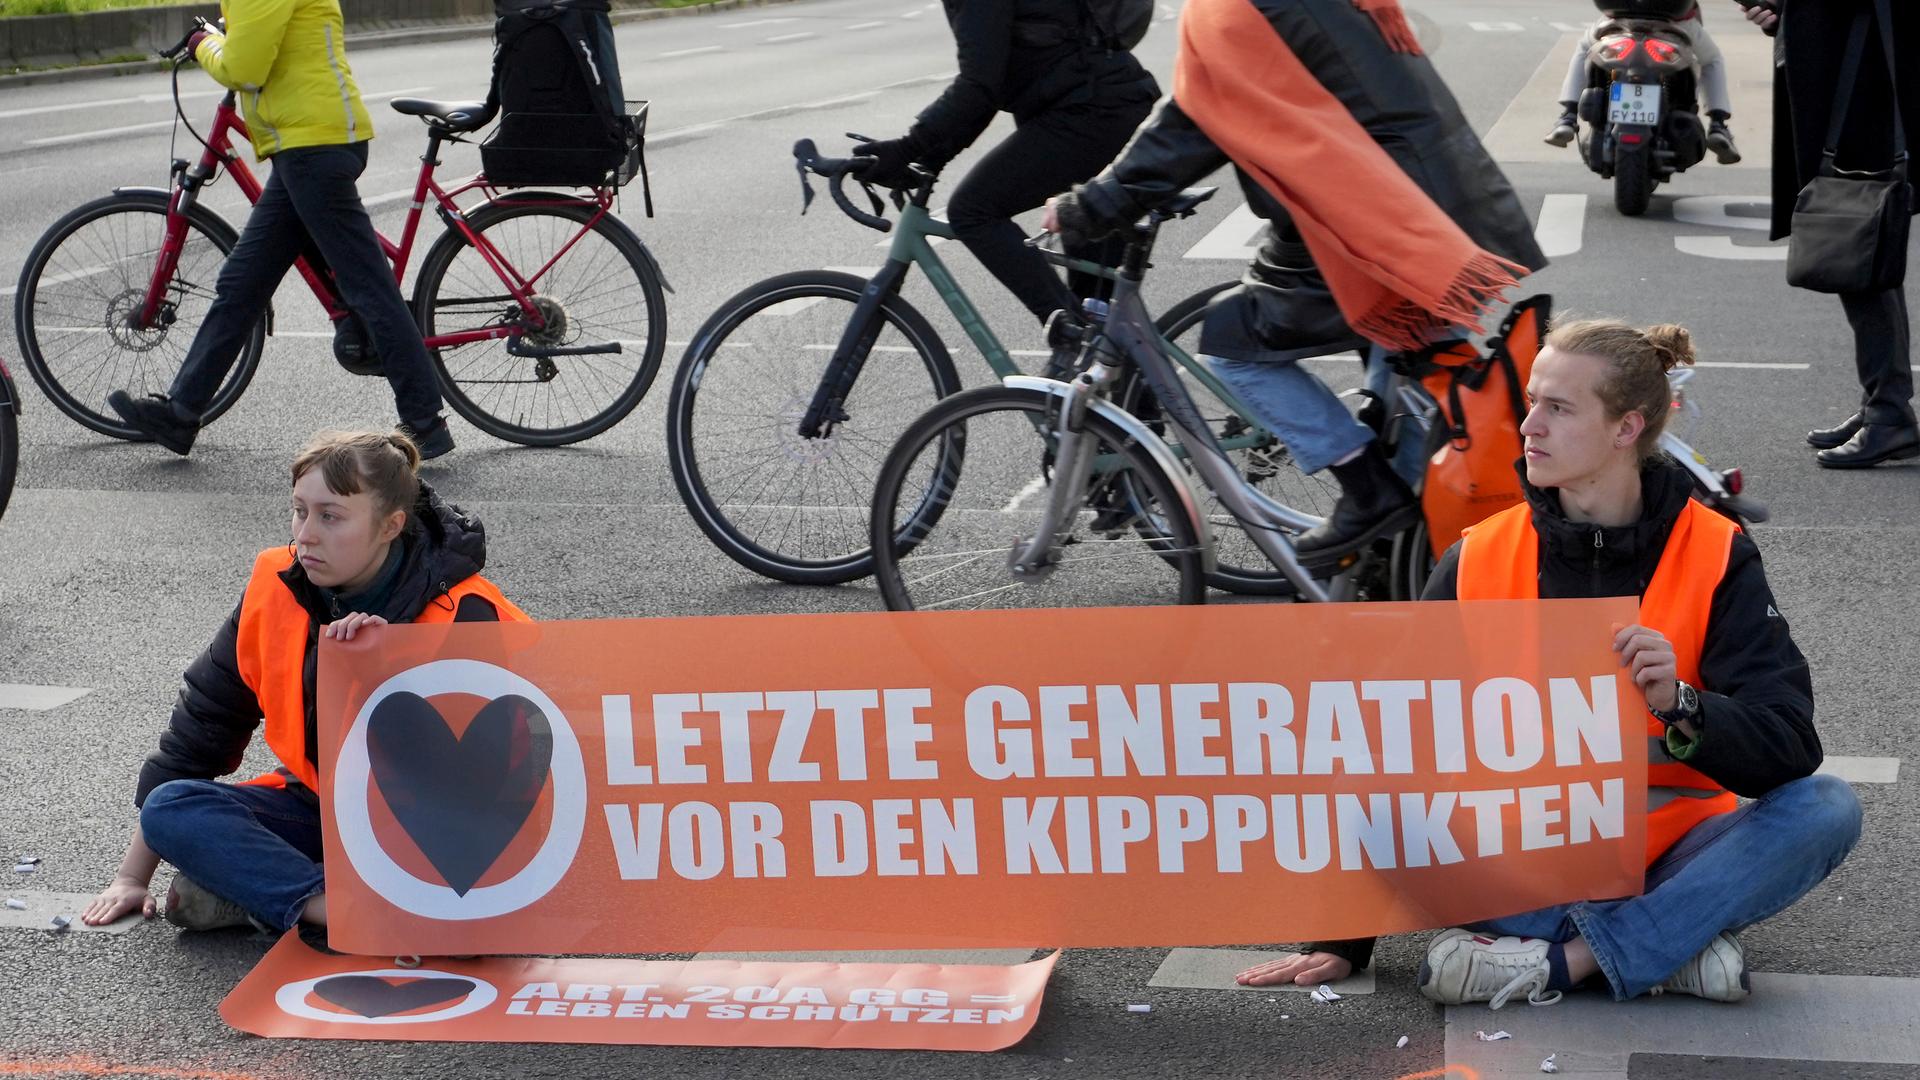 Fahrradfahrer umfahren eine Sitzblockade von zwei Klimaaktivisten der Gruppe "Letzte Generation" in Berlin. Die beiden halten ein Transparent mit der Aufschrift "Letzte Generation vor den Kipppunkten".